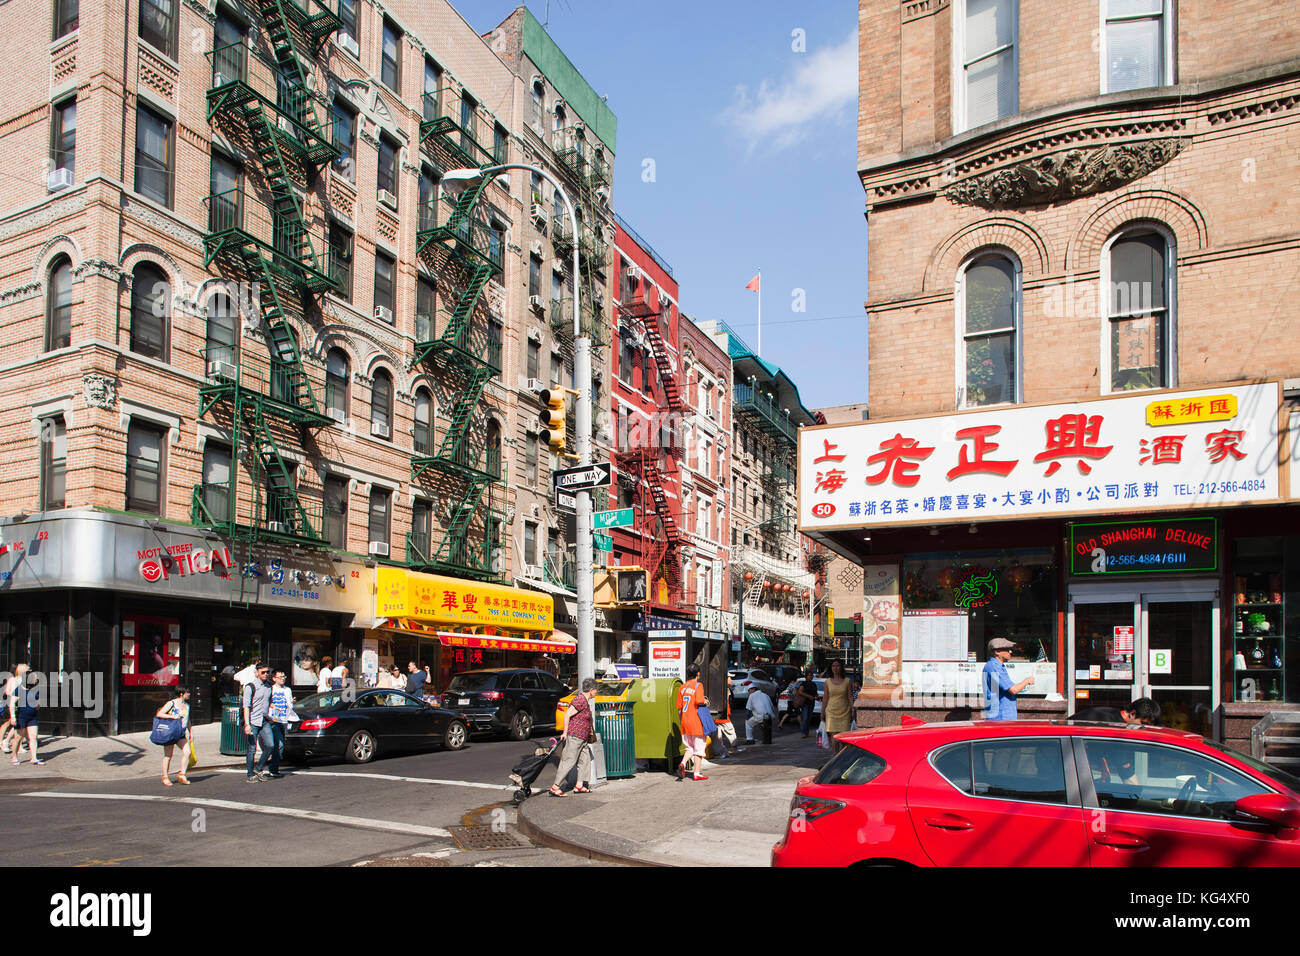 Mott street and Bayard street, China town, Manhattan, New York, USA, America Stock Photo